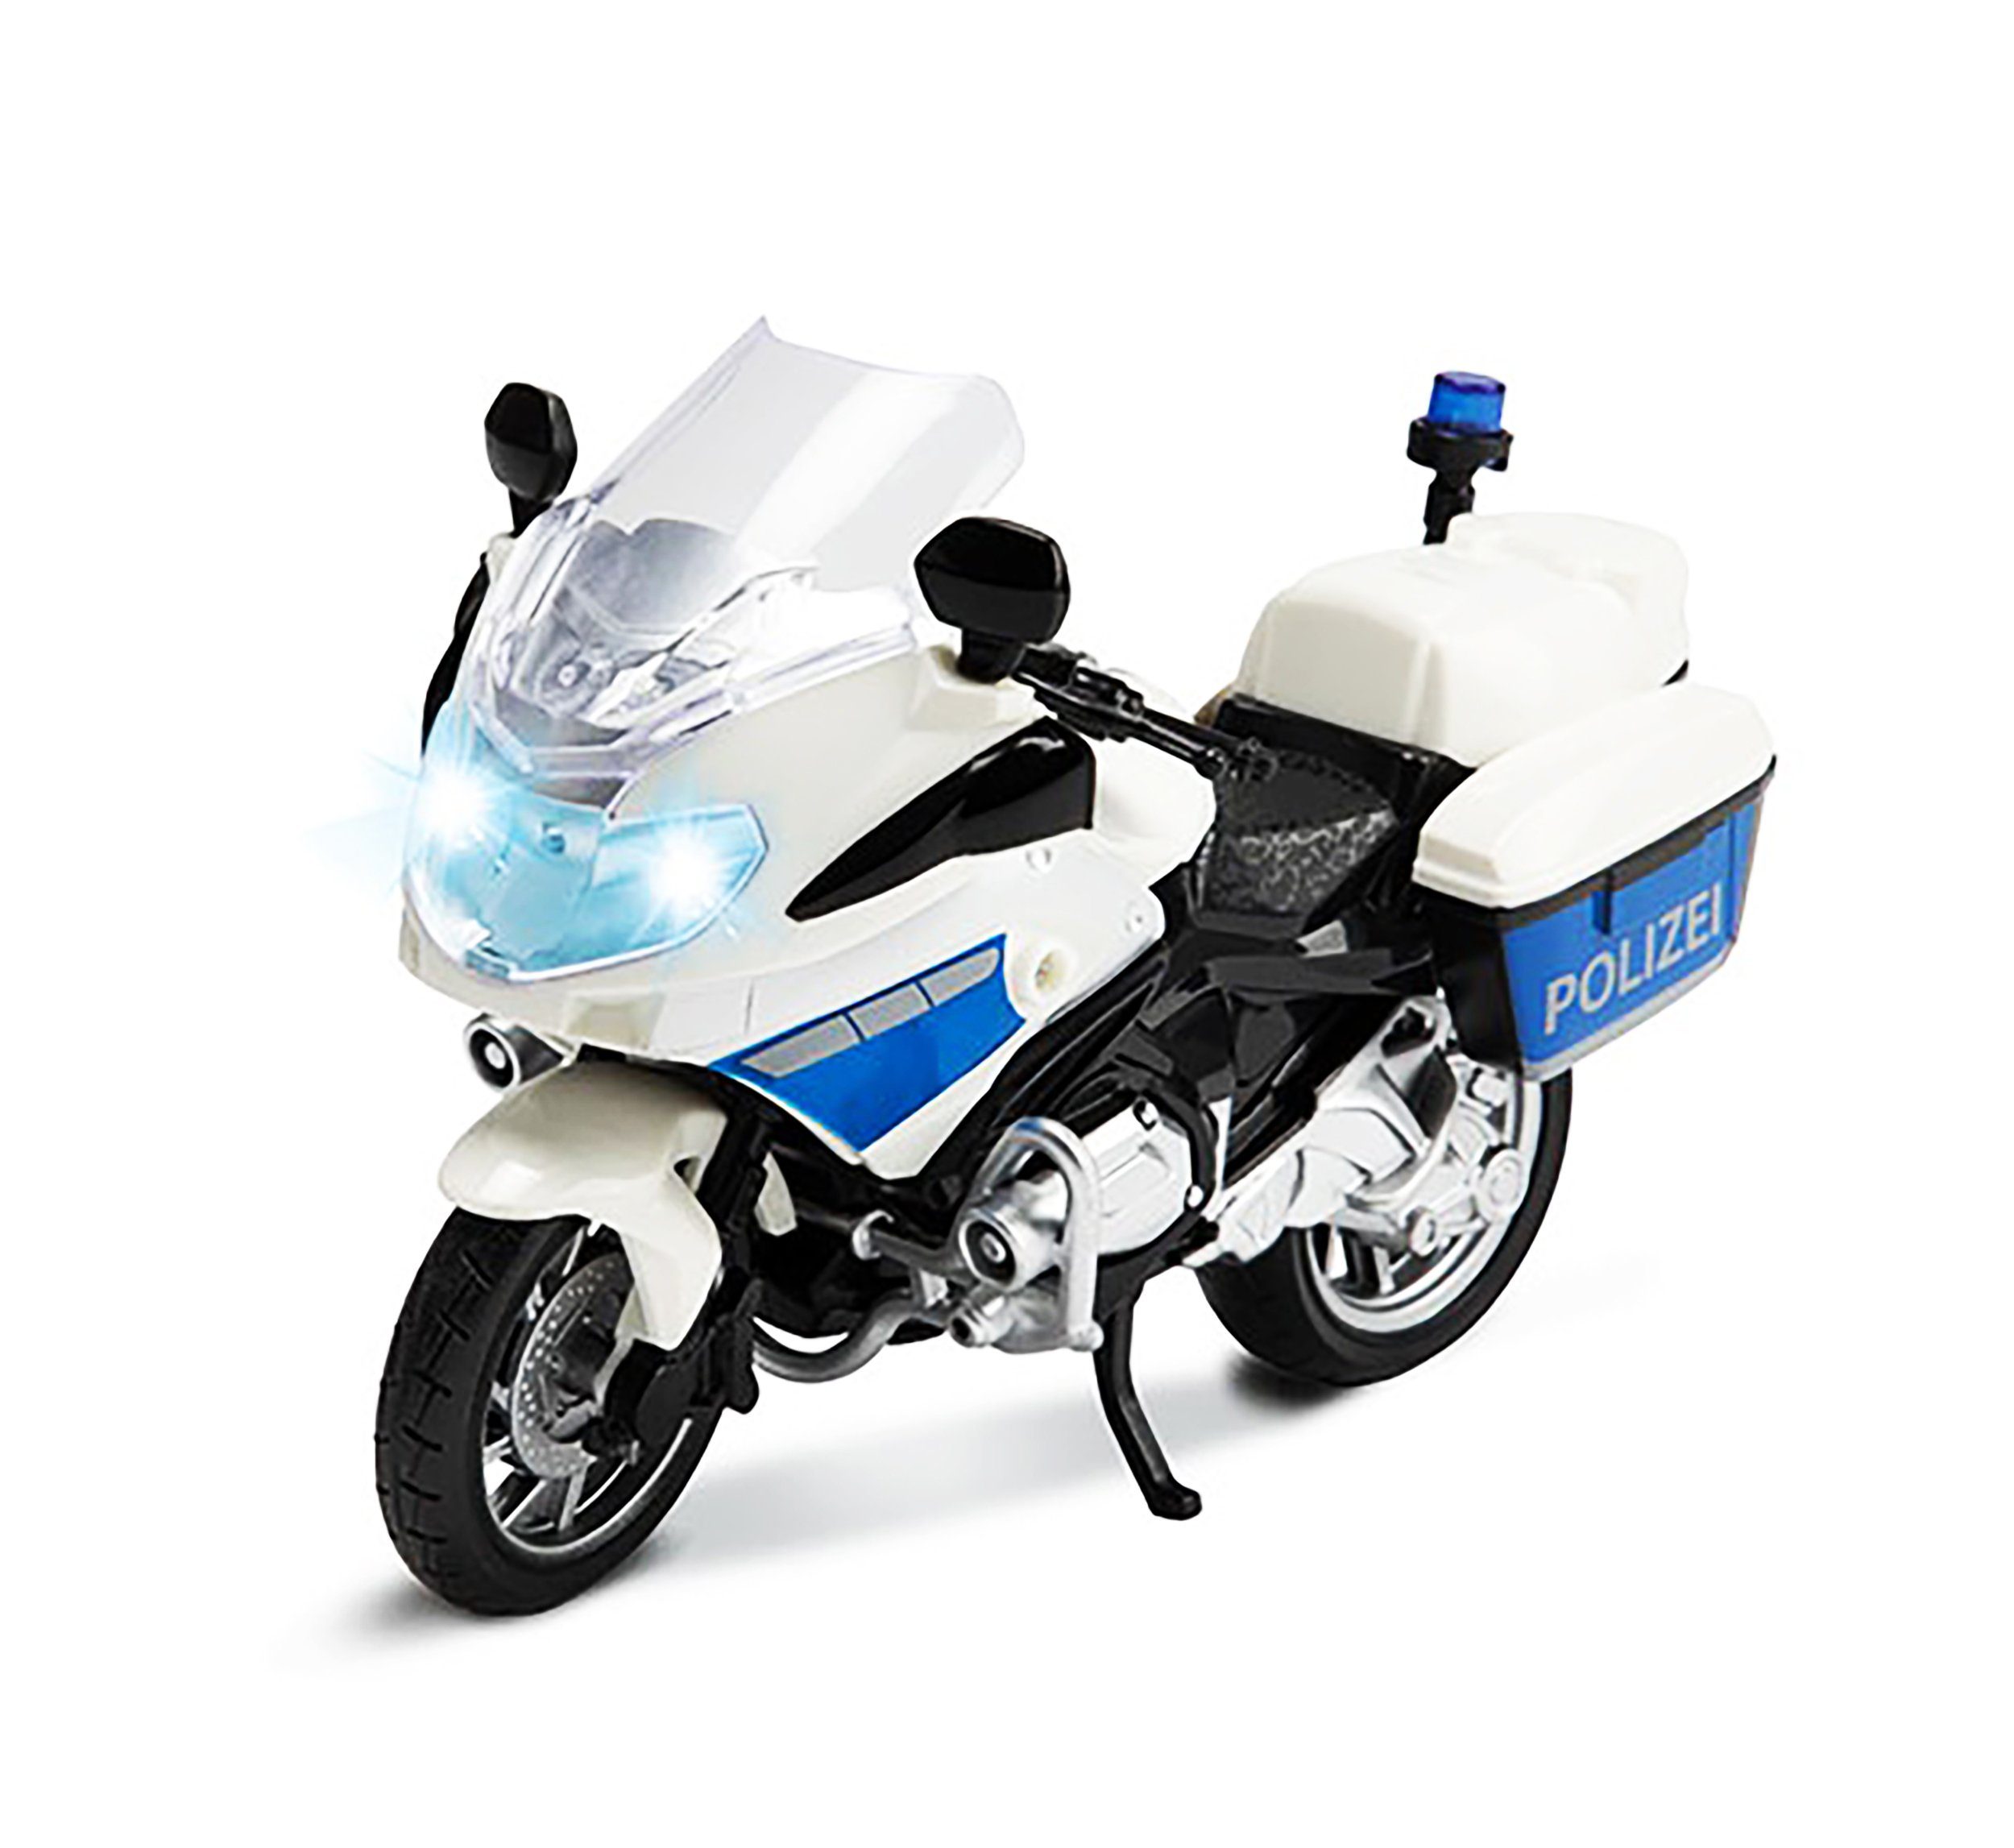 Toi-Toys Spielzeug-Motorrad POLIZEI MOTORRAD mit Licht und Sound 1:20  Polizeimotorrad Modell 85, Spielzeug Geschenk Kinder